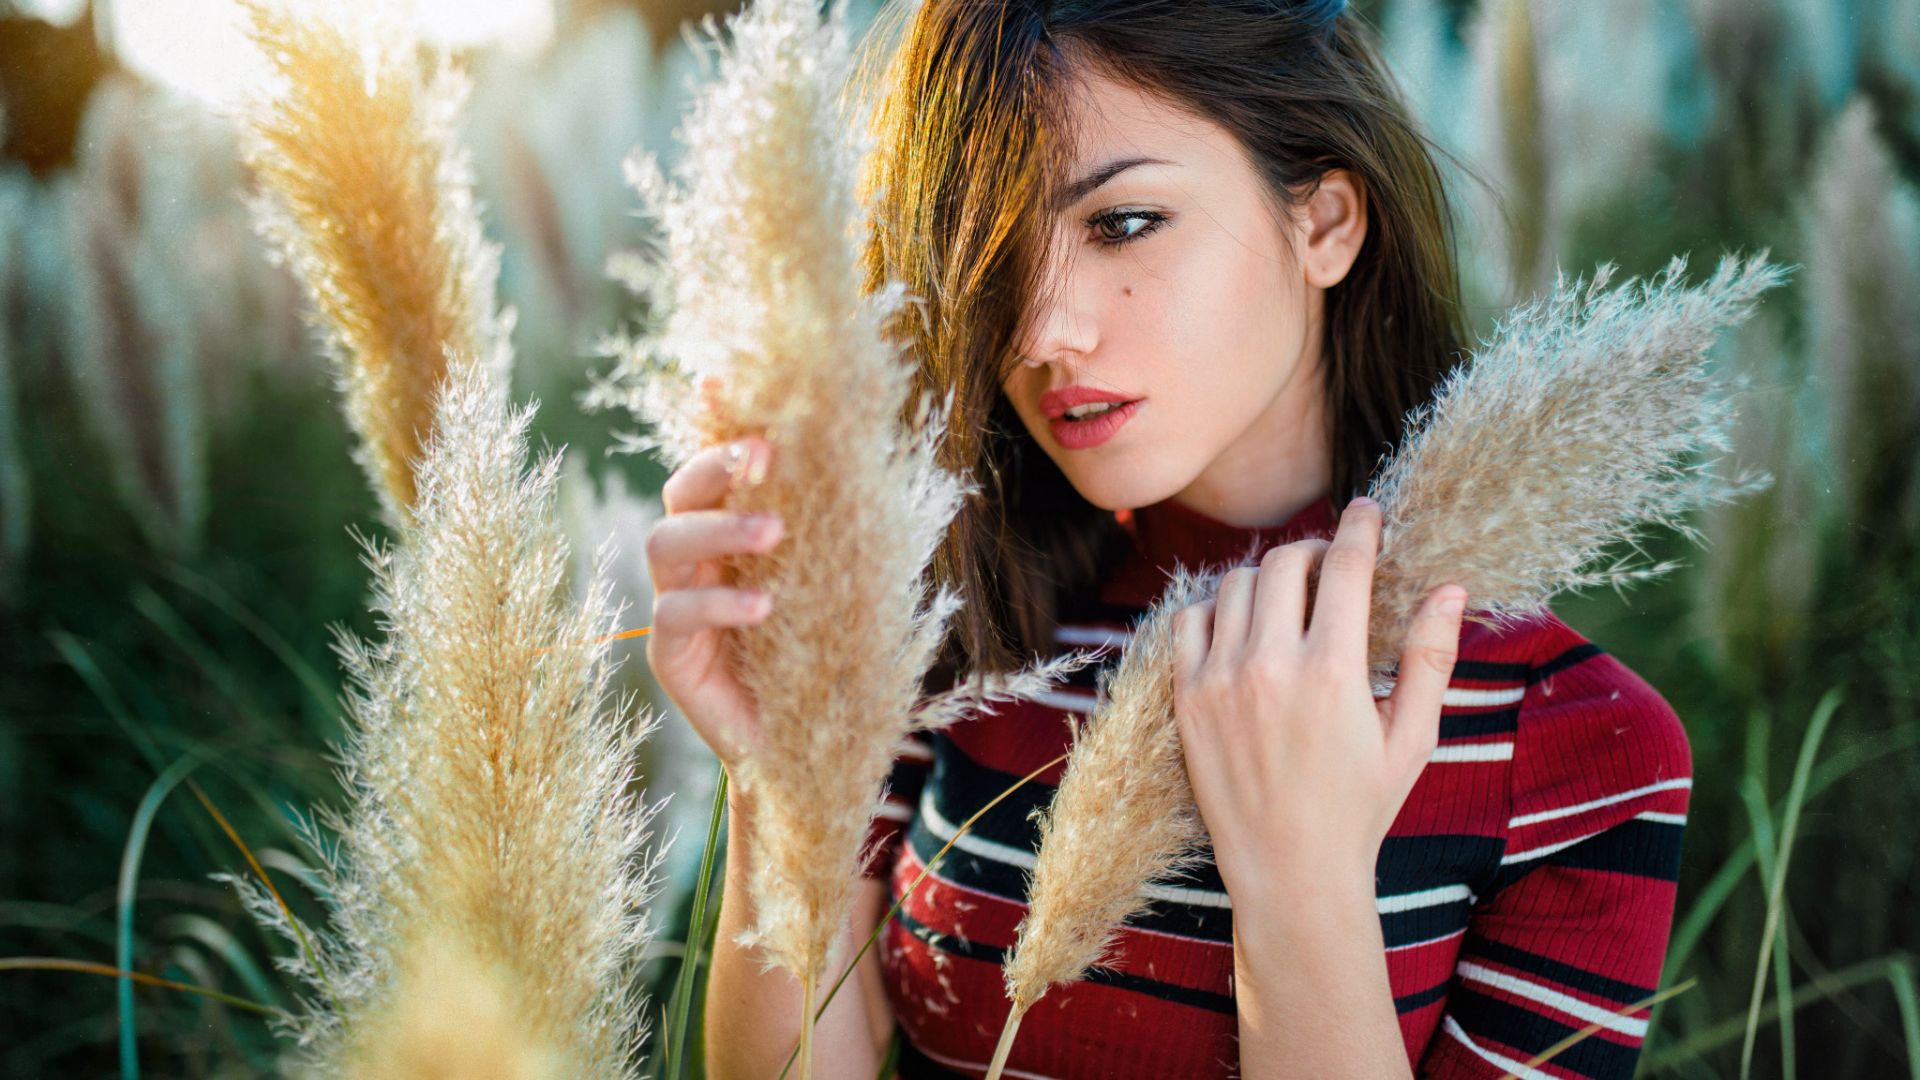 Wallpaper Grass, outdoor, girl model